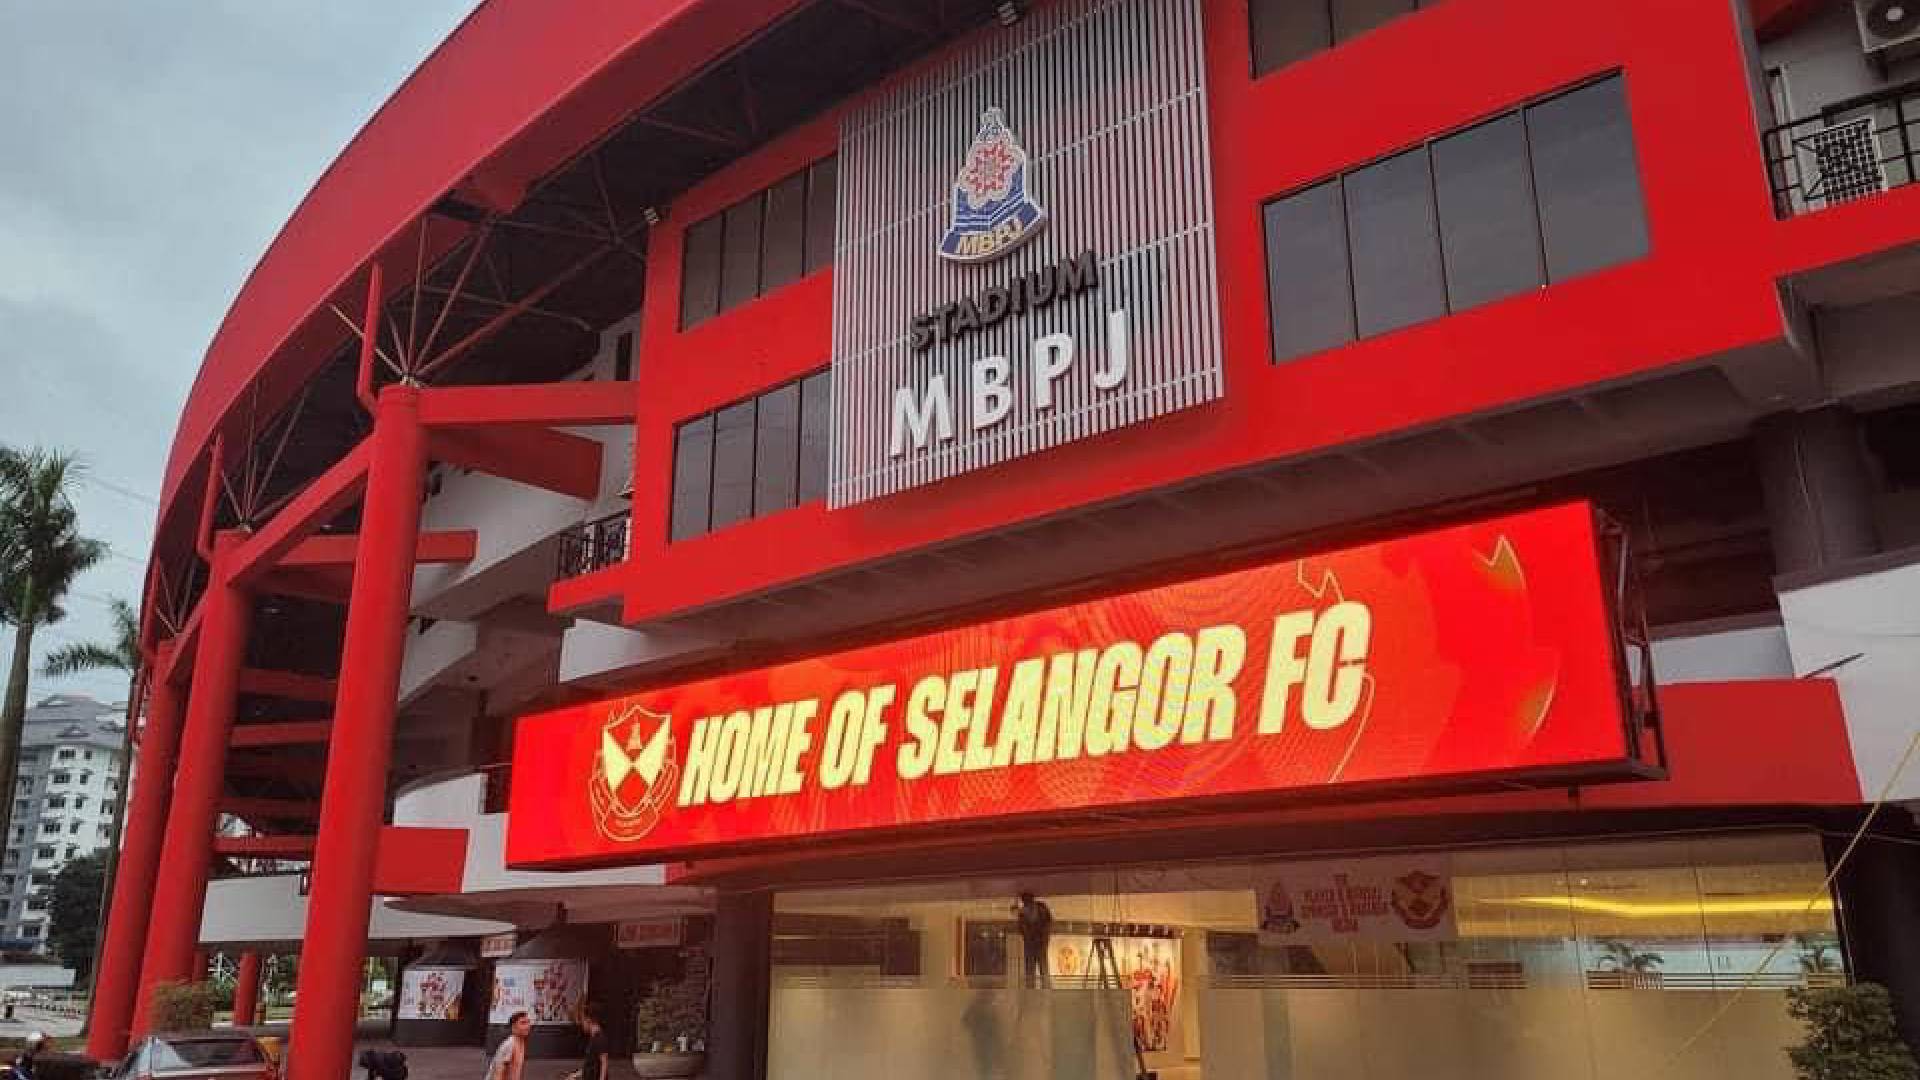 Papan Tanda “Home of Selangor FC” Warnai Musim Baru Selangor Ke Asia